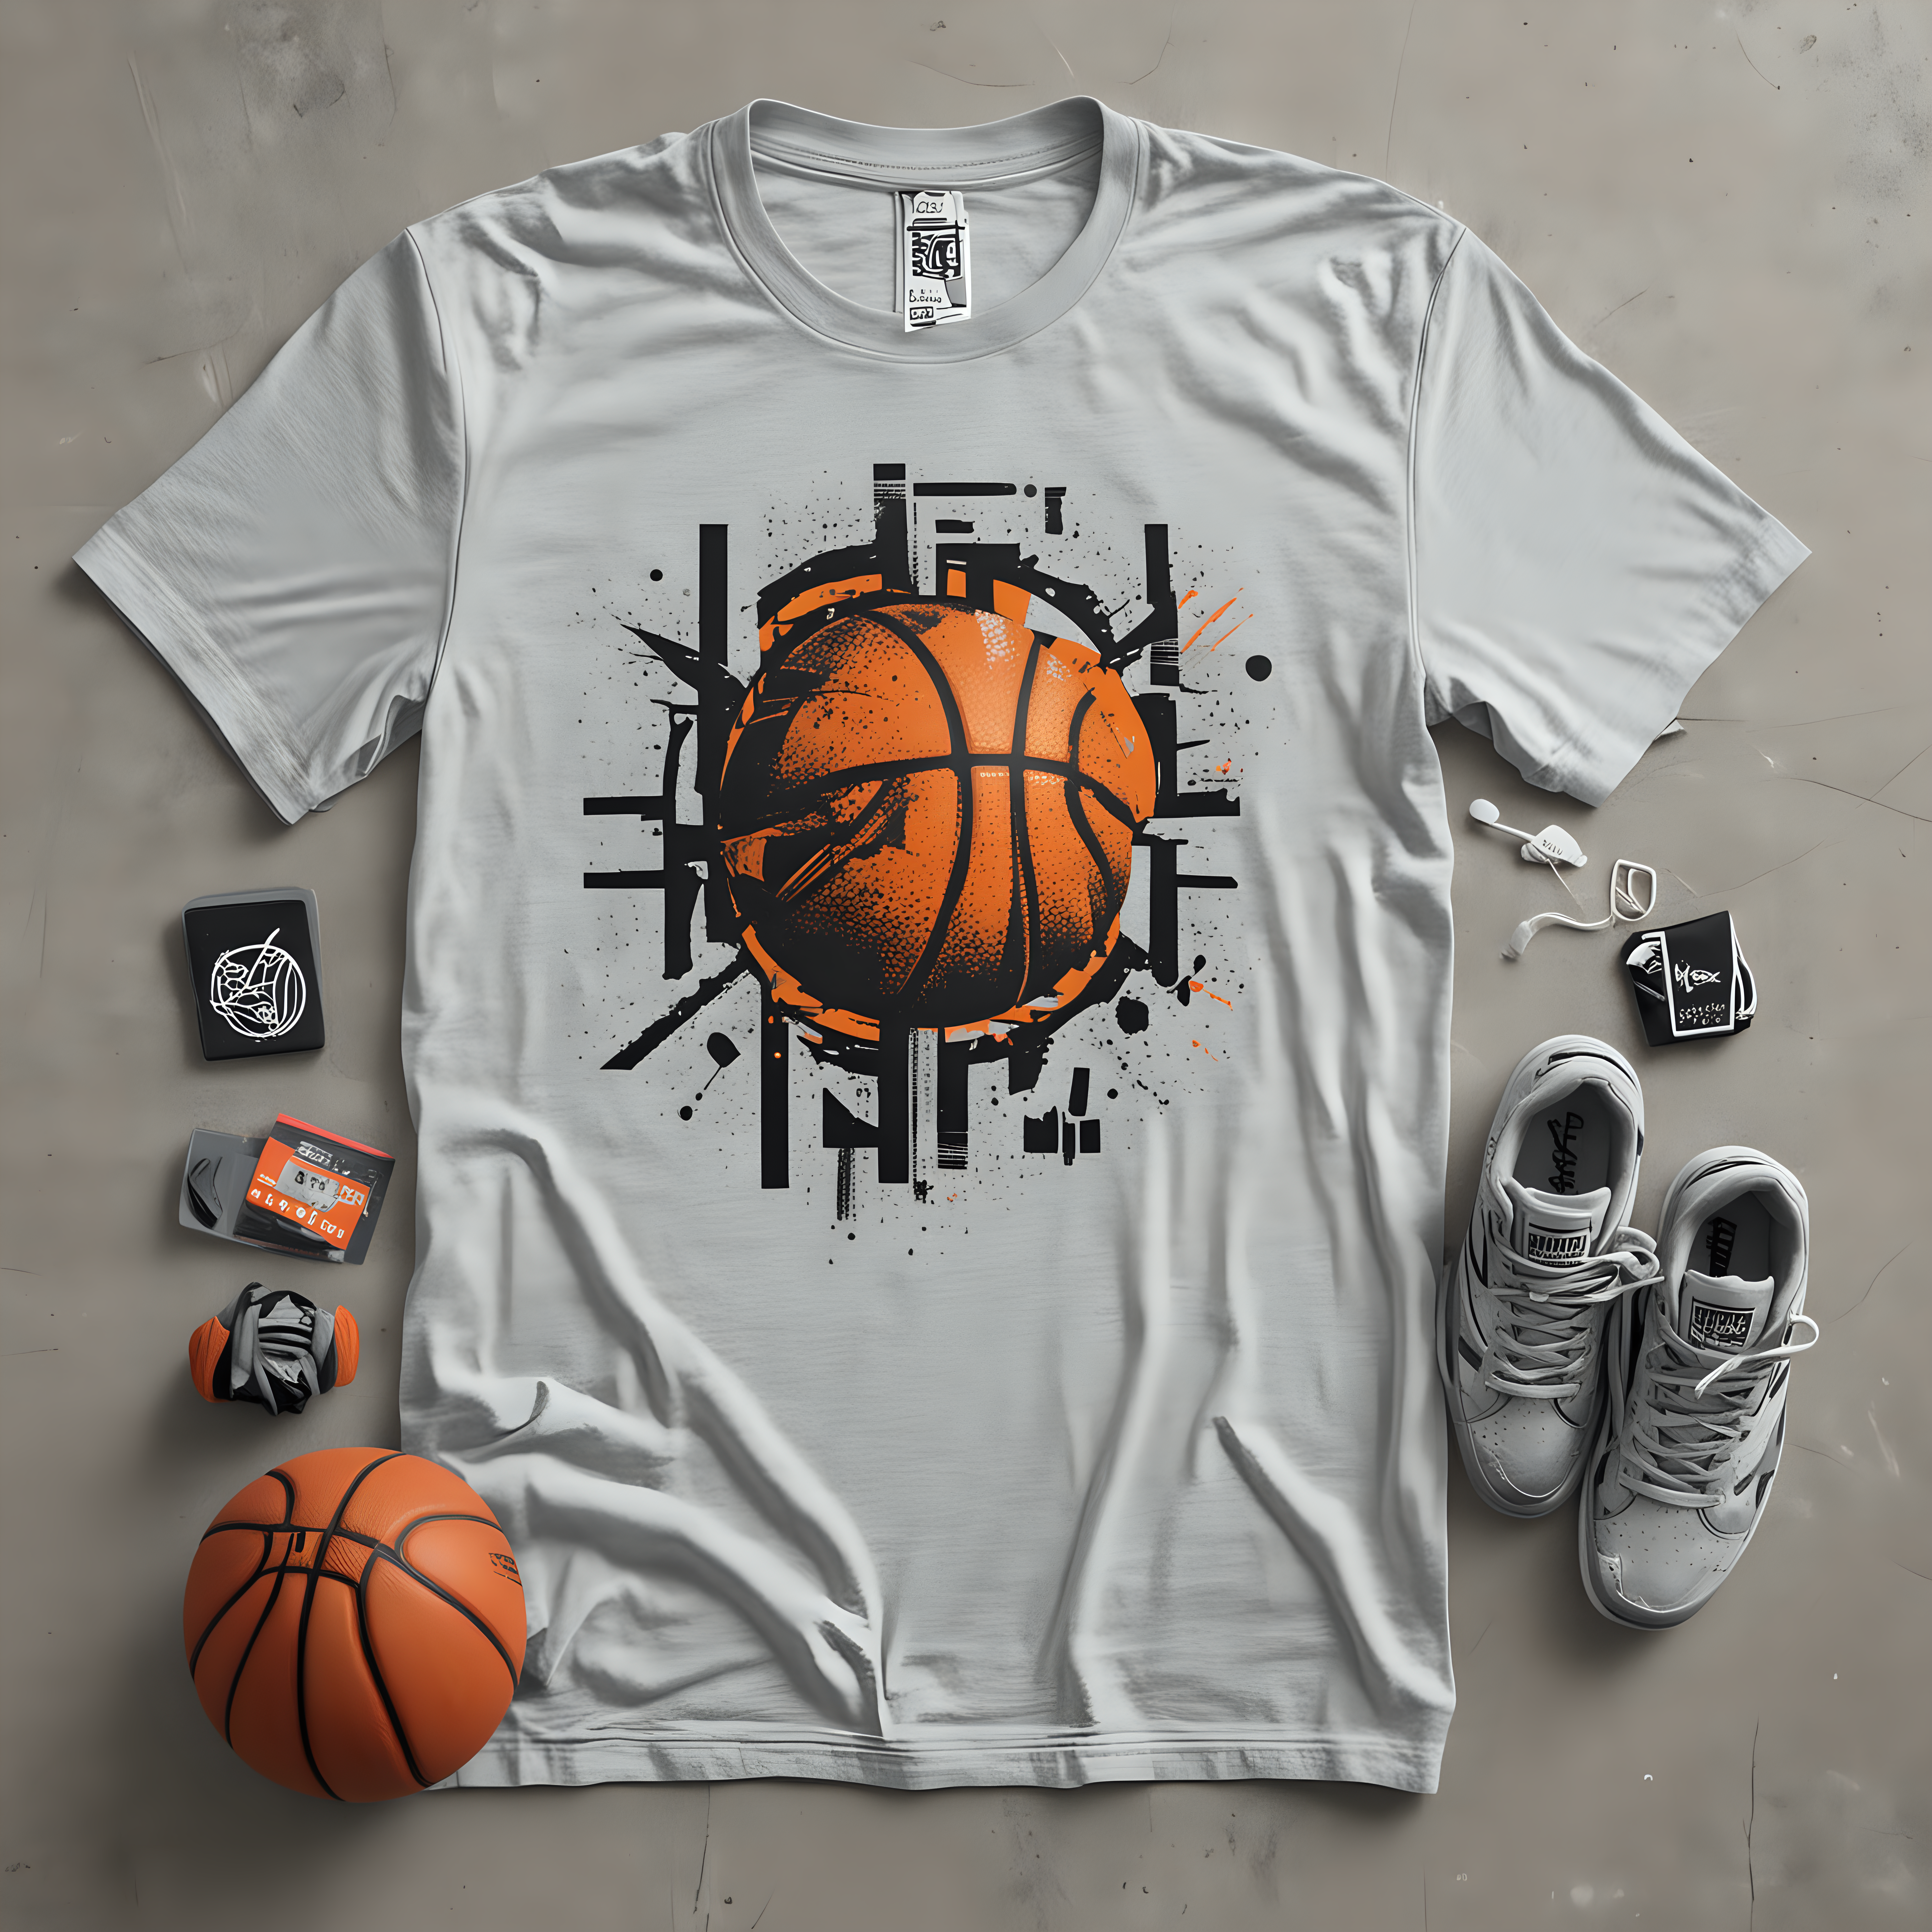 diseño para una camisera para una marca de ropa moderna que se llama KF4, incluye elementos de baloncesto en el fondo, conjunto de grises.





